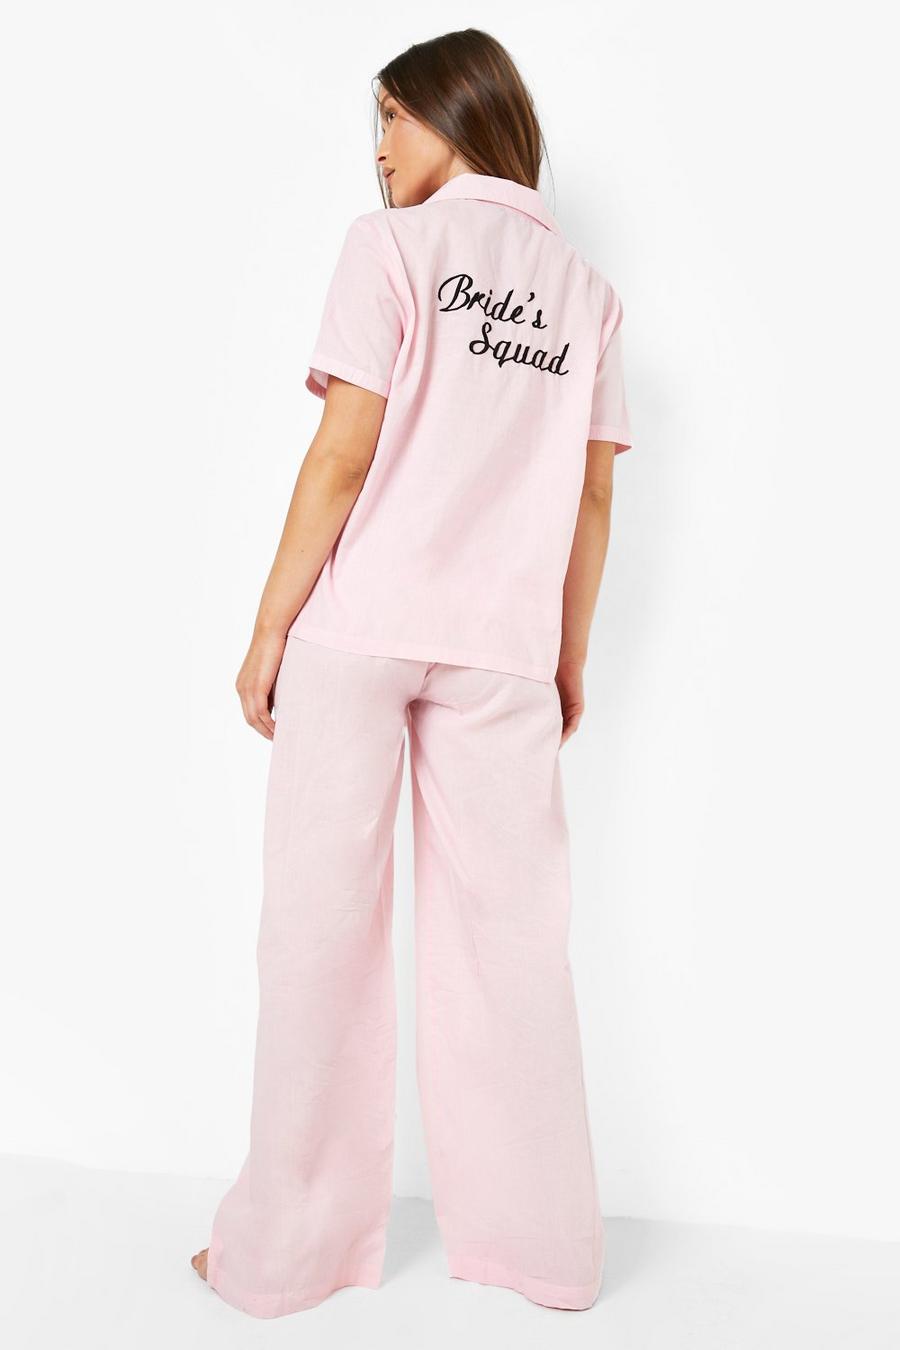 Pyjama-Set aus Baumwolle mit Bride's Squad Stickerei, Blush rosa